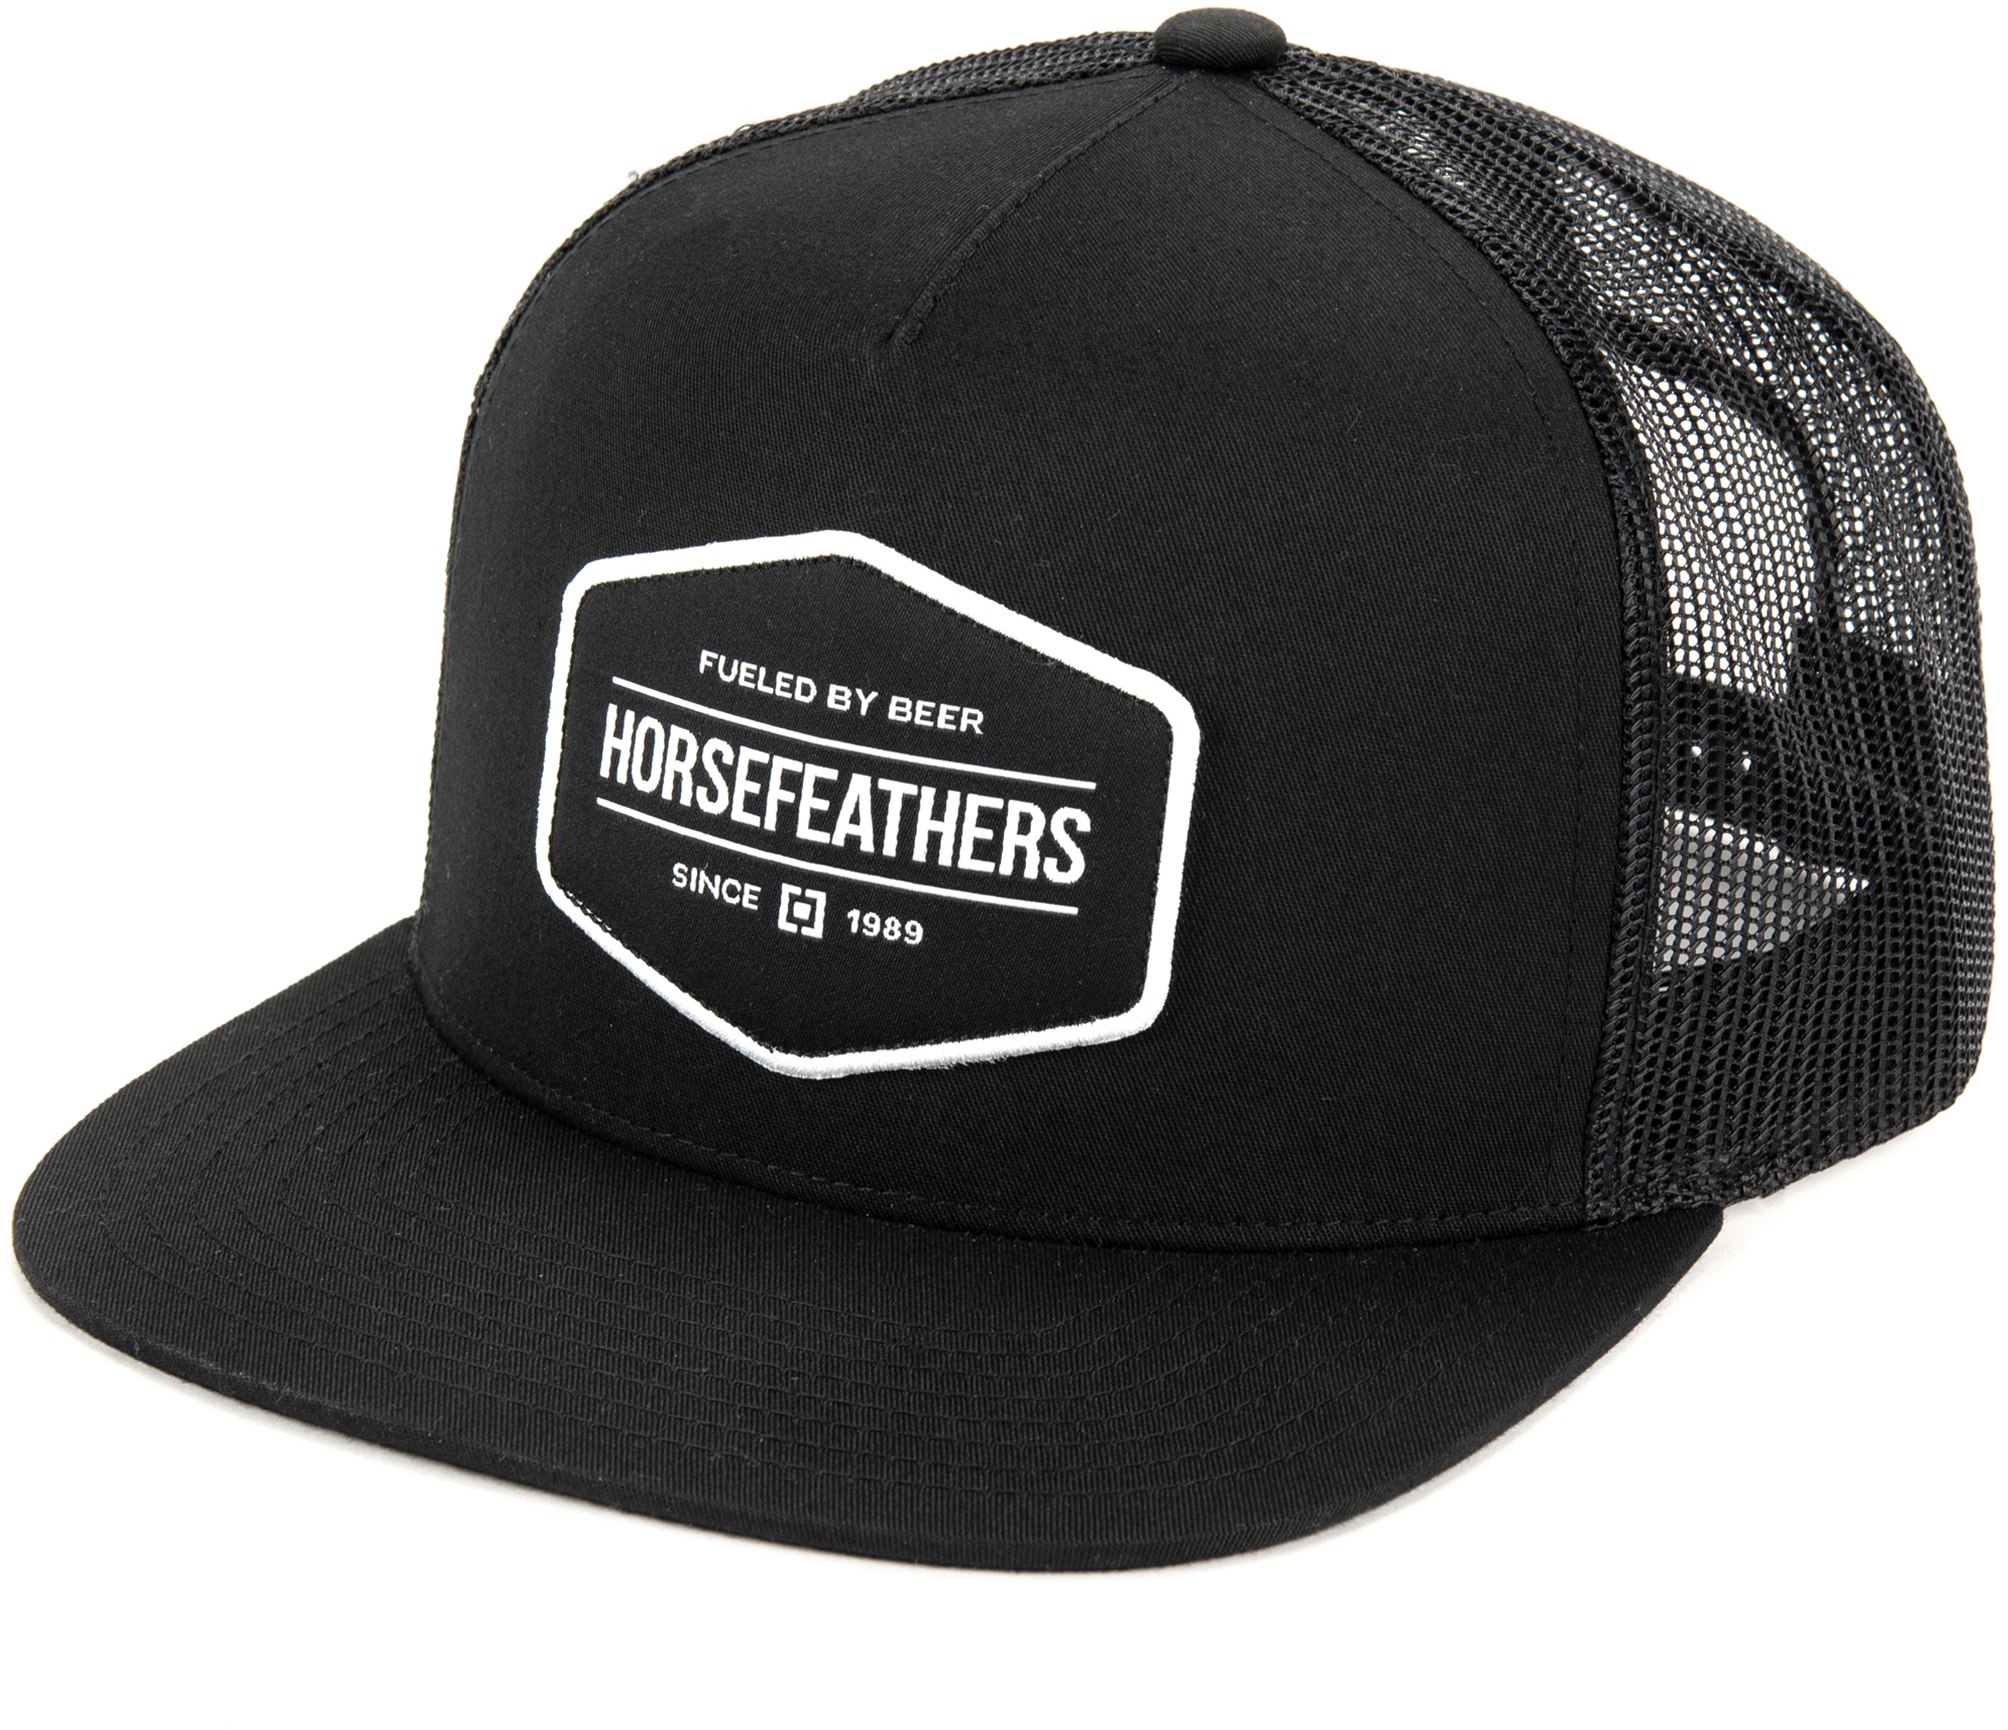 Men’s trucker hat